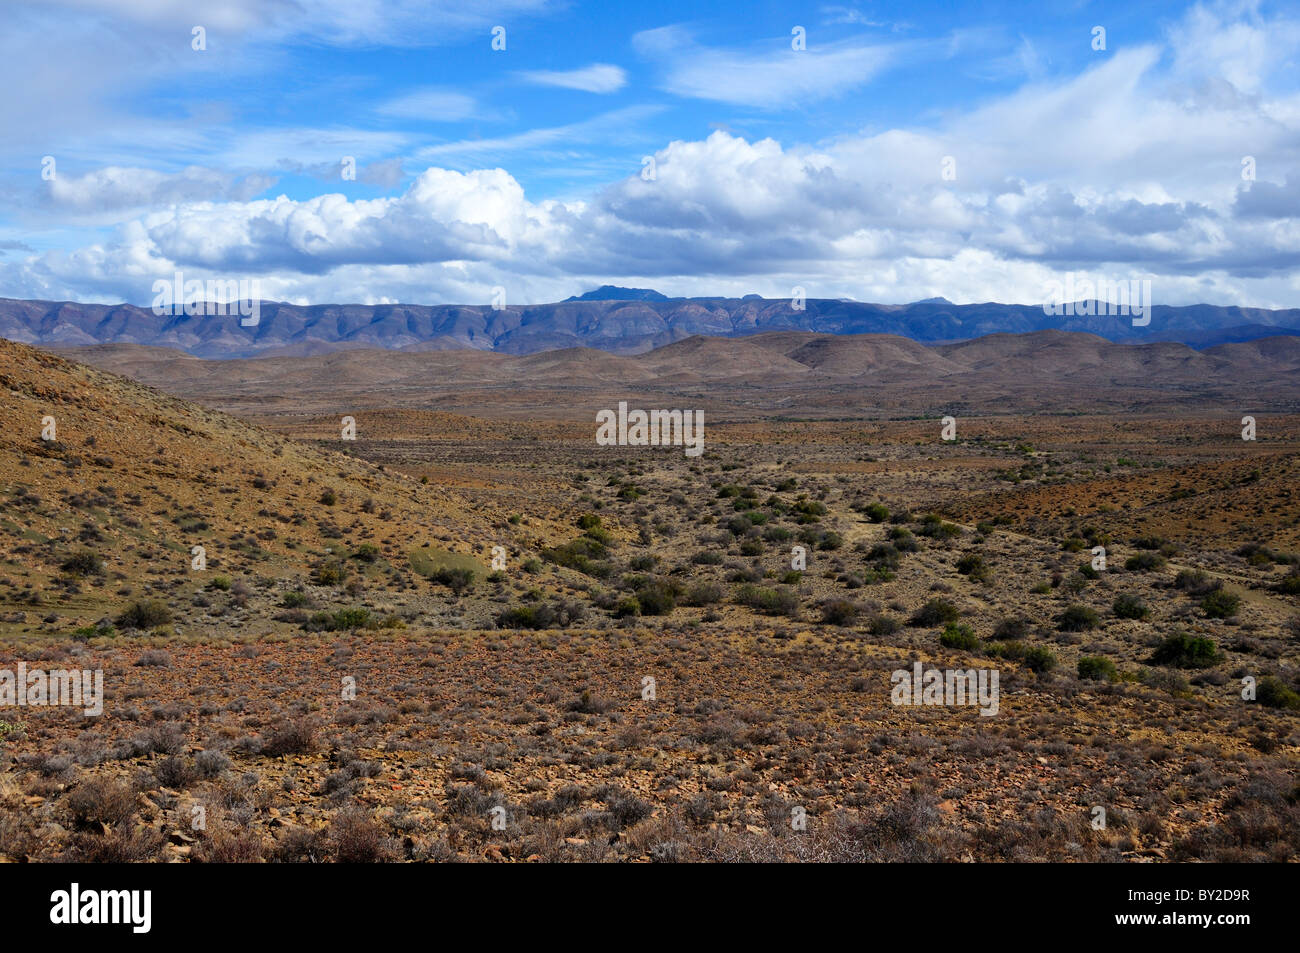 Desert landscape of Karoo basin, South Africa. Stock Photo